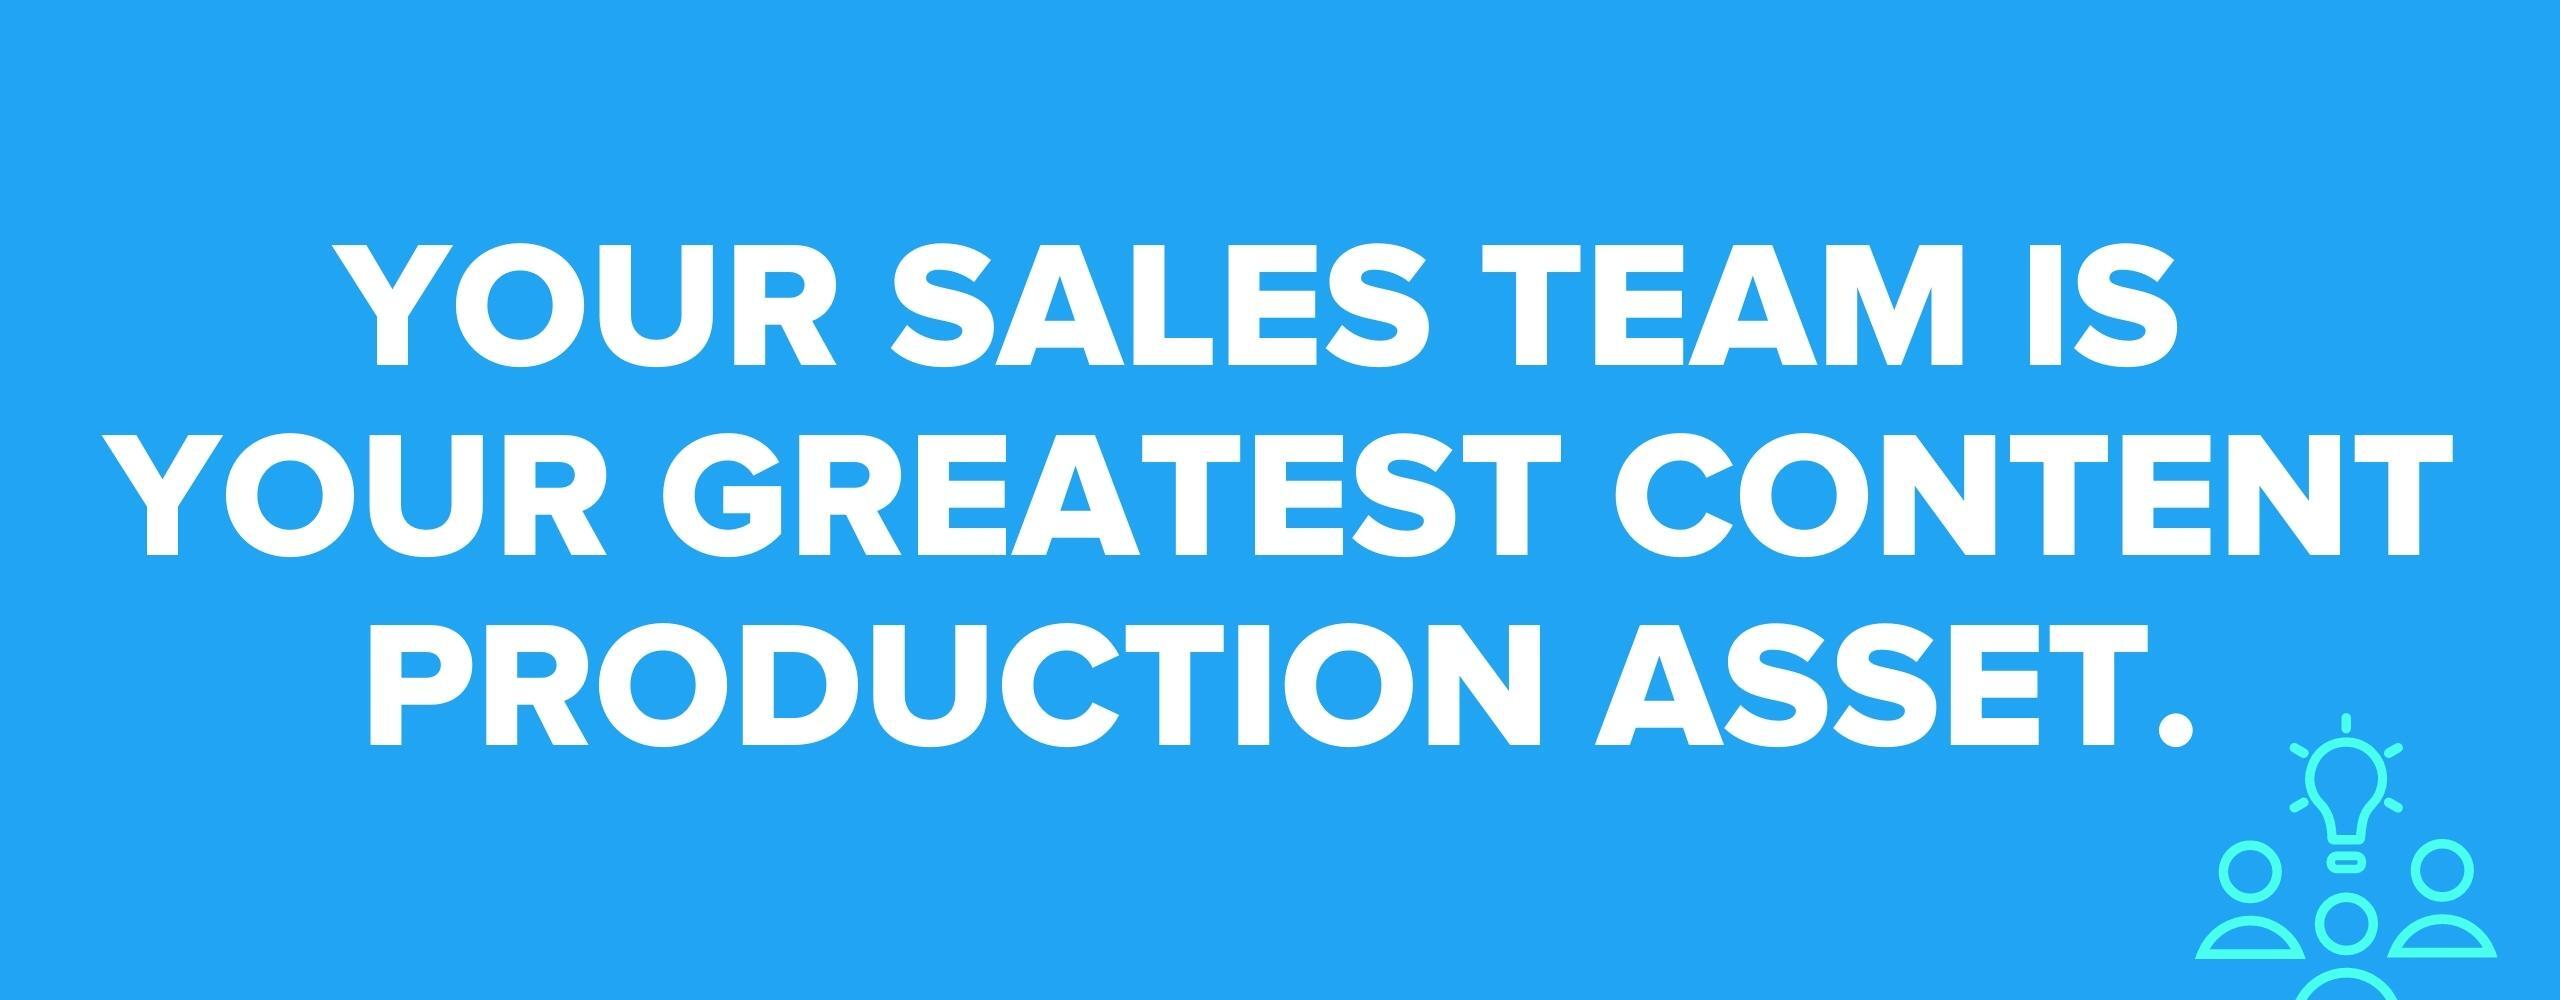 sales-team-content